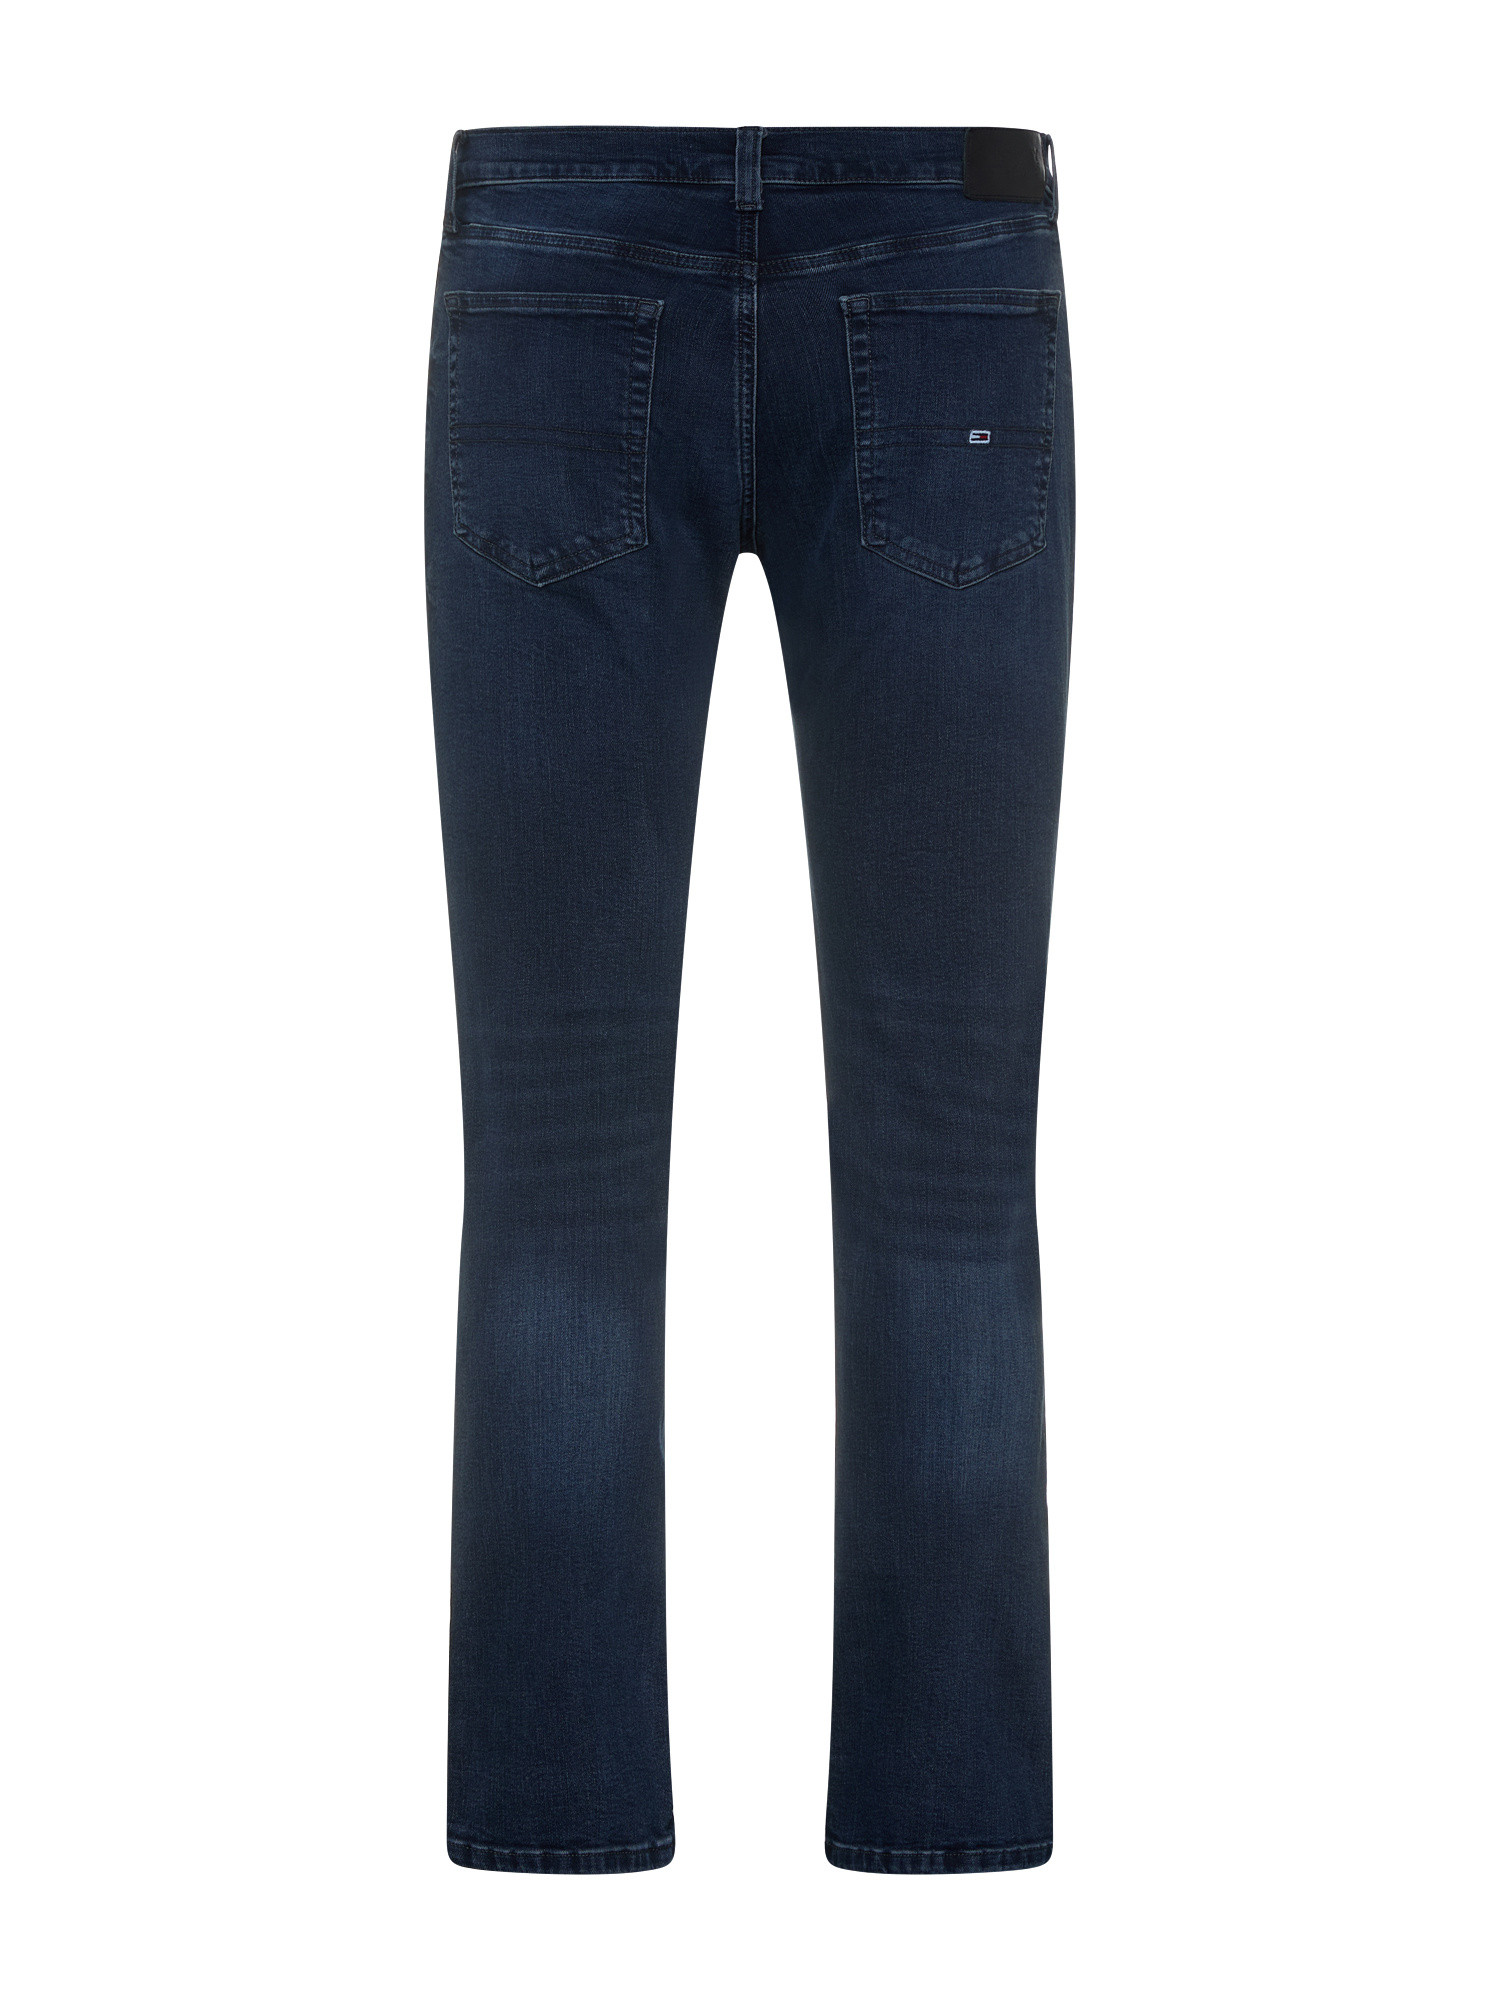 Tommy Jeans - Five pocket jeans, Denim, large image number 1